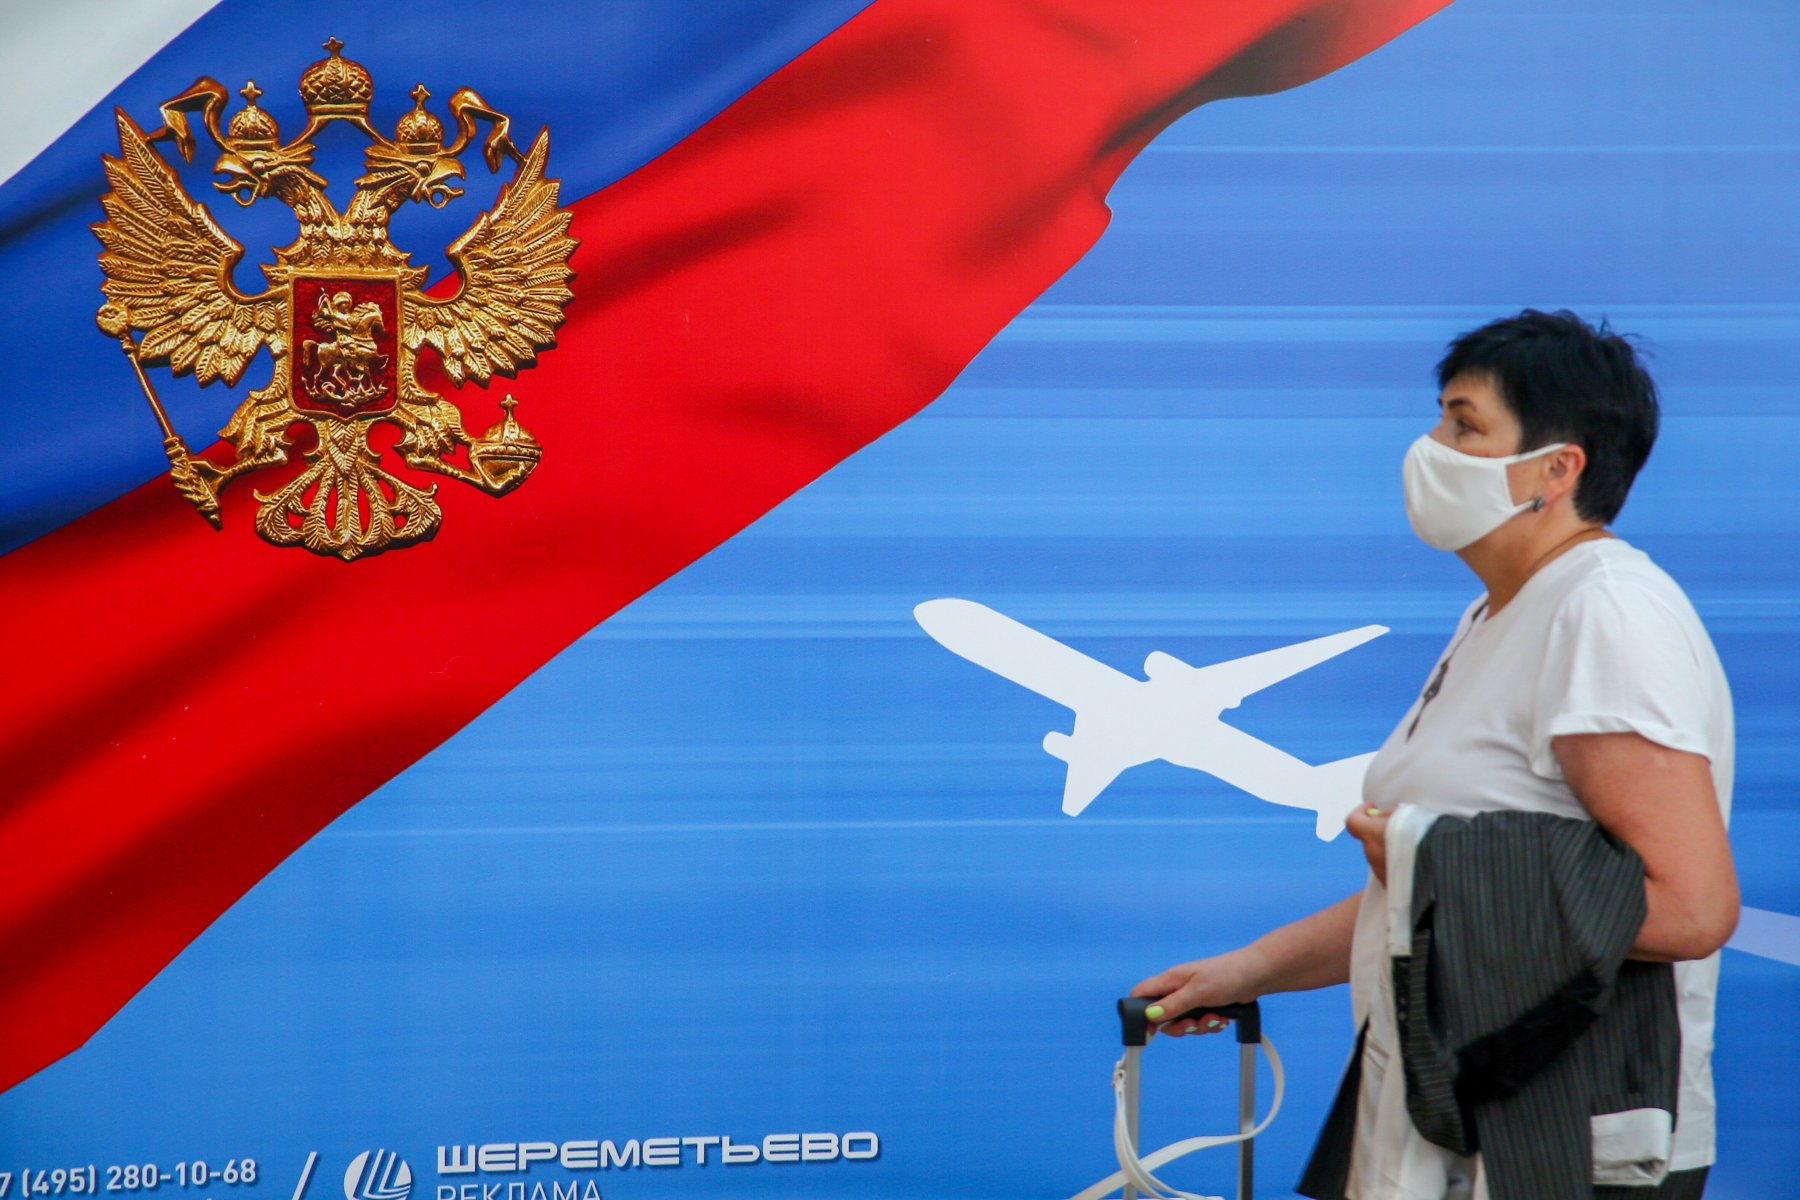 В московских аэропортах возникла угроза теракта